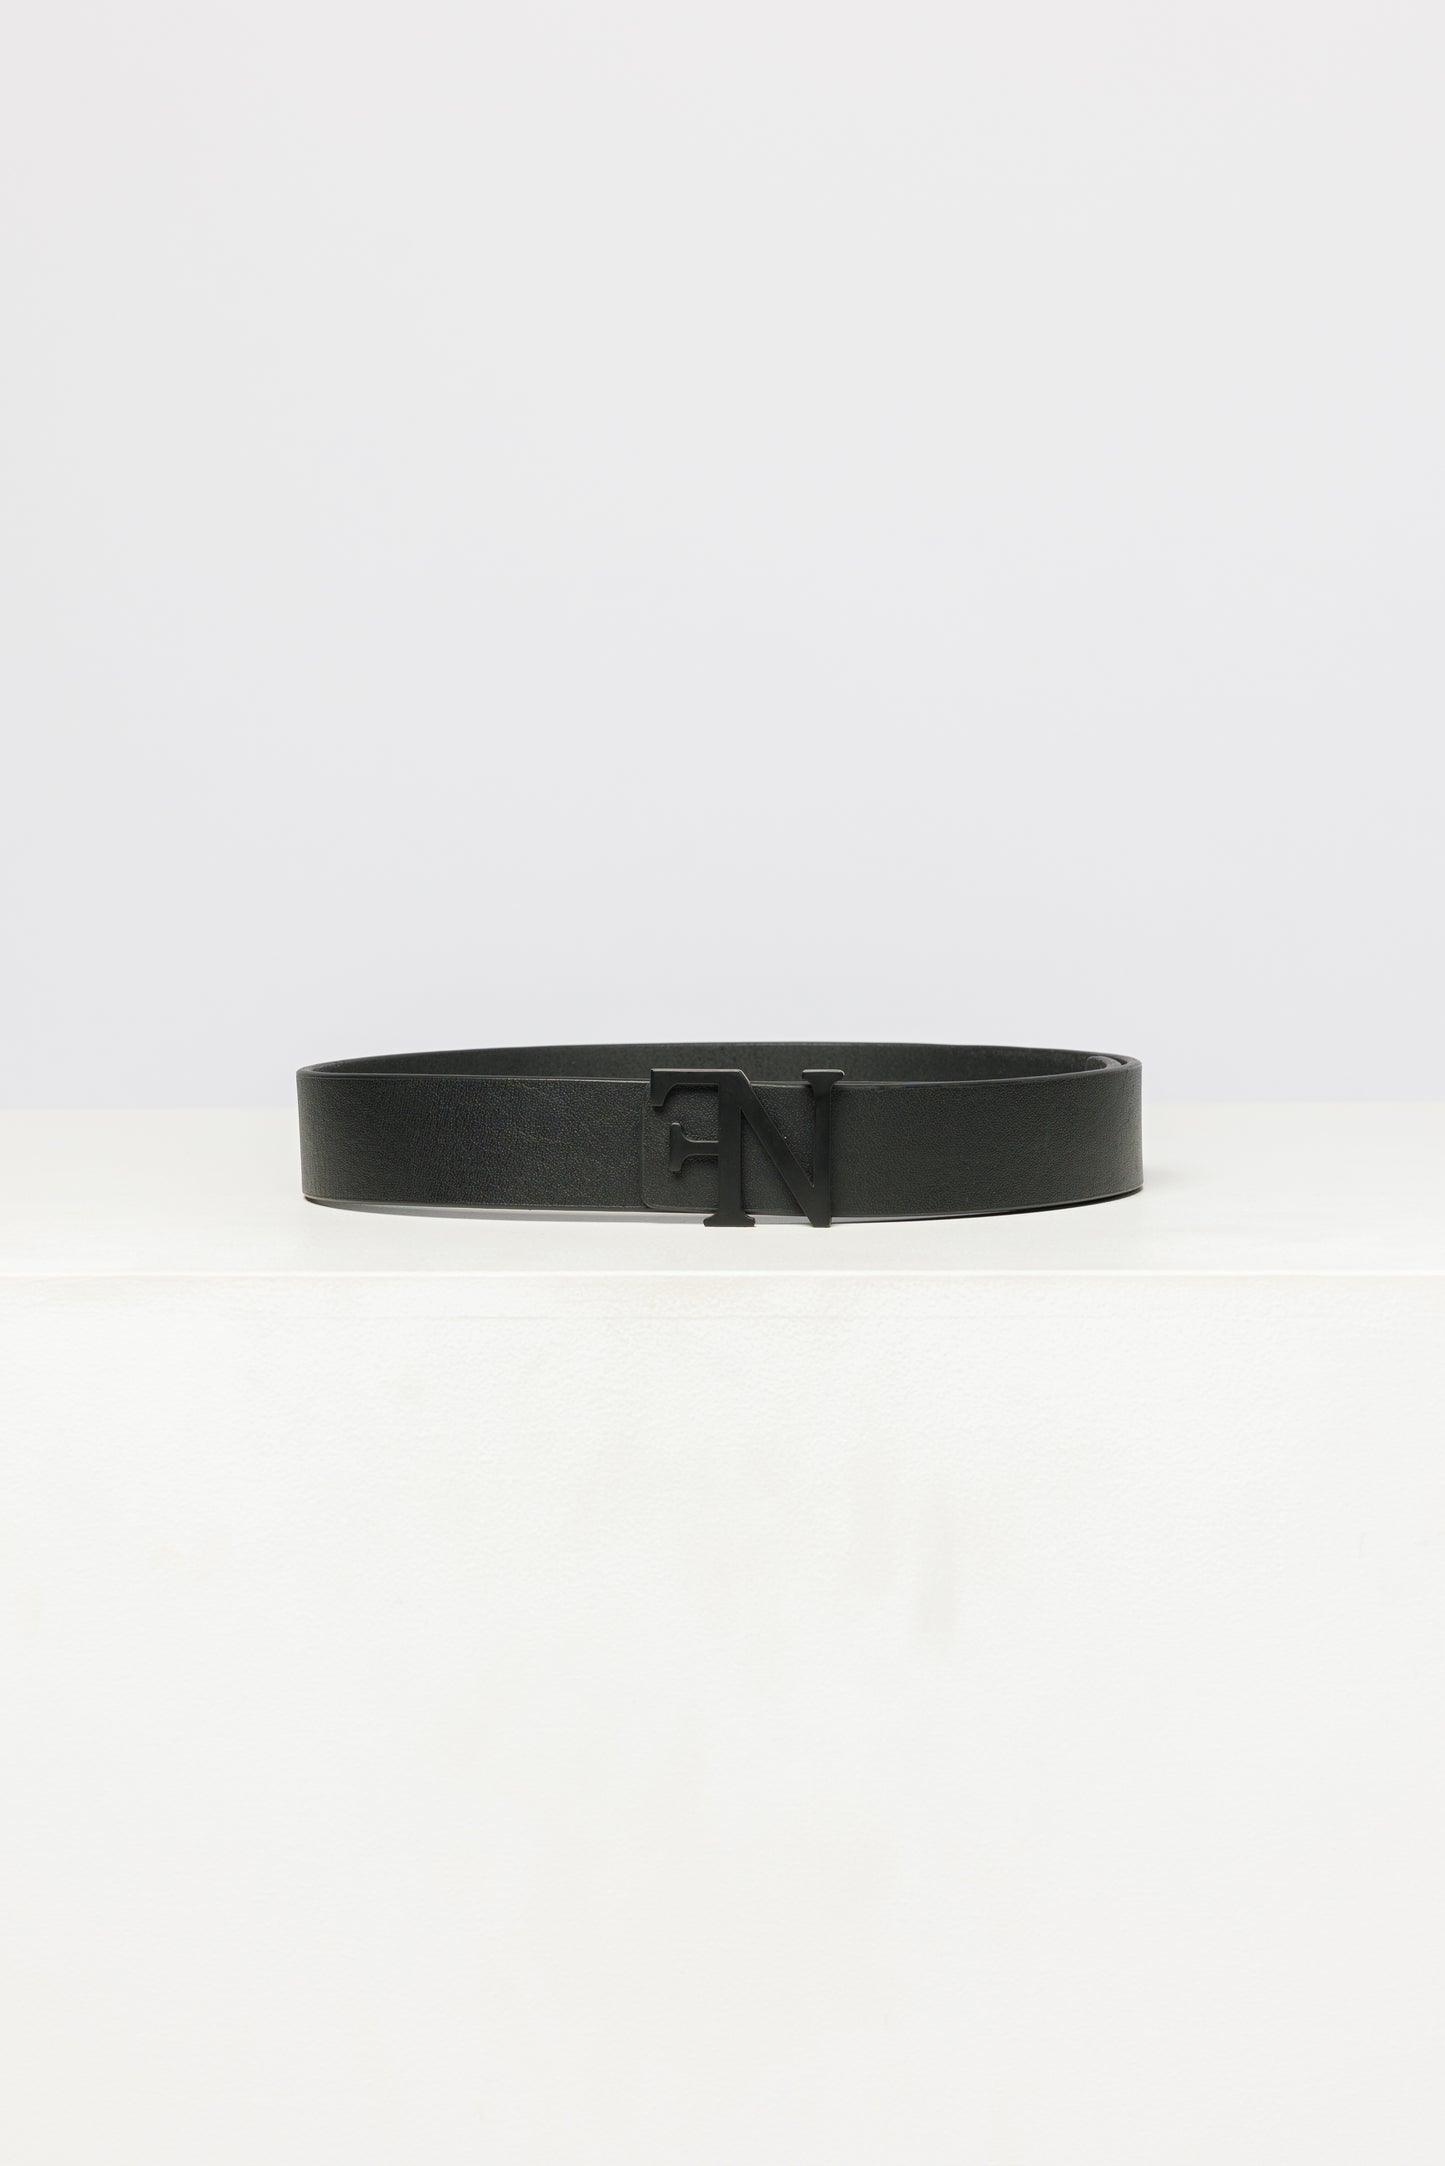 Forenaire Leather Belt - Black on Black